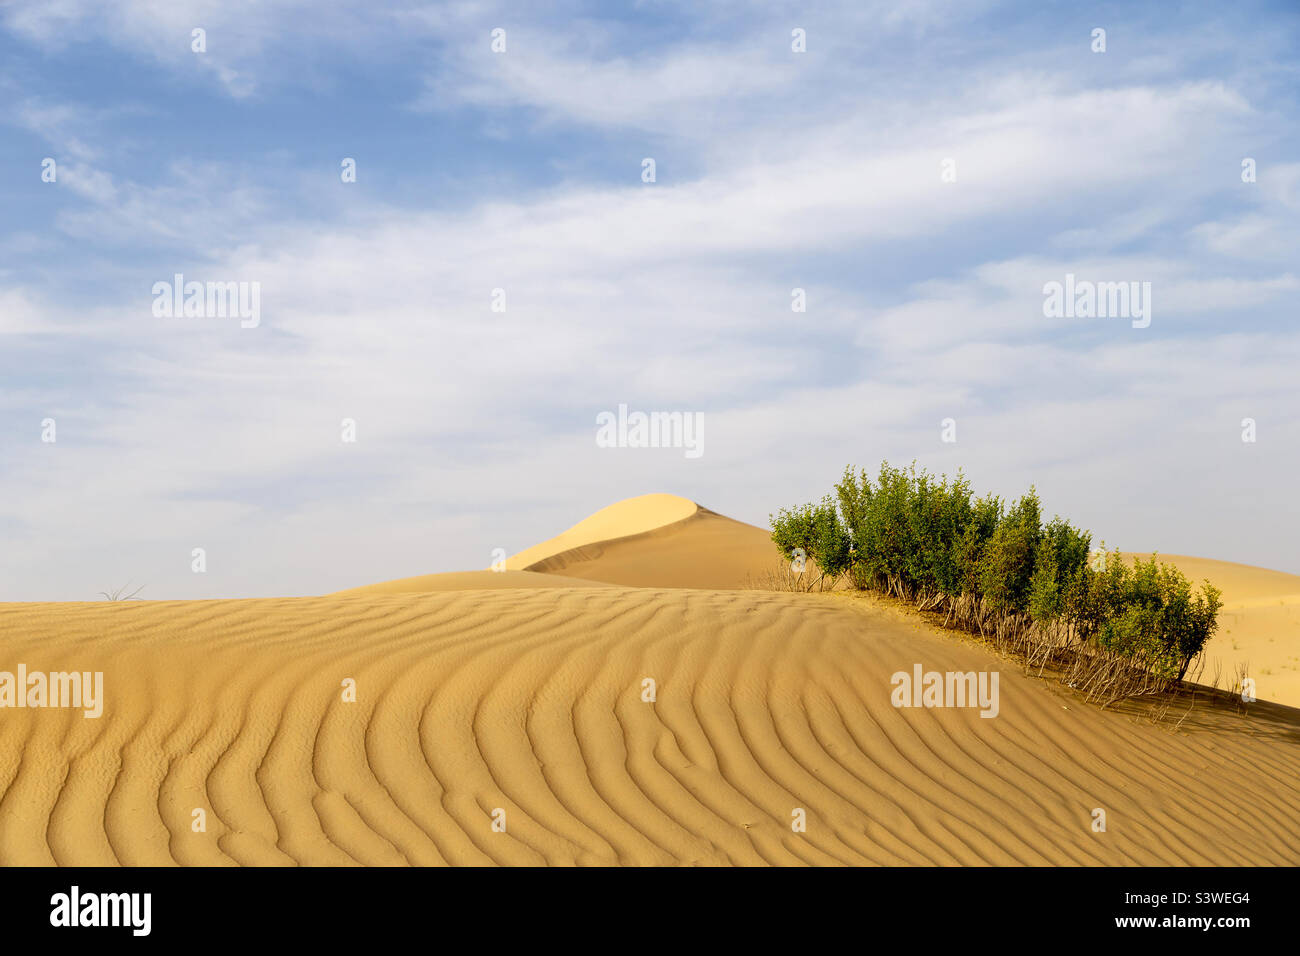 Enchanting desert landscape in summer Stock Photo